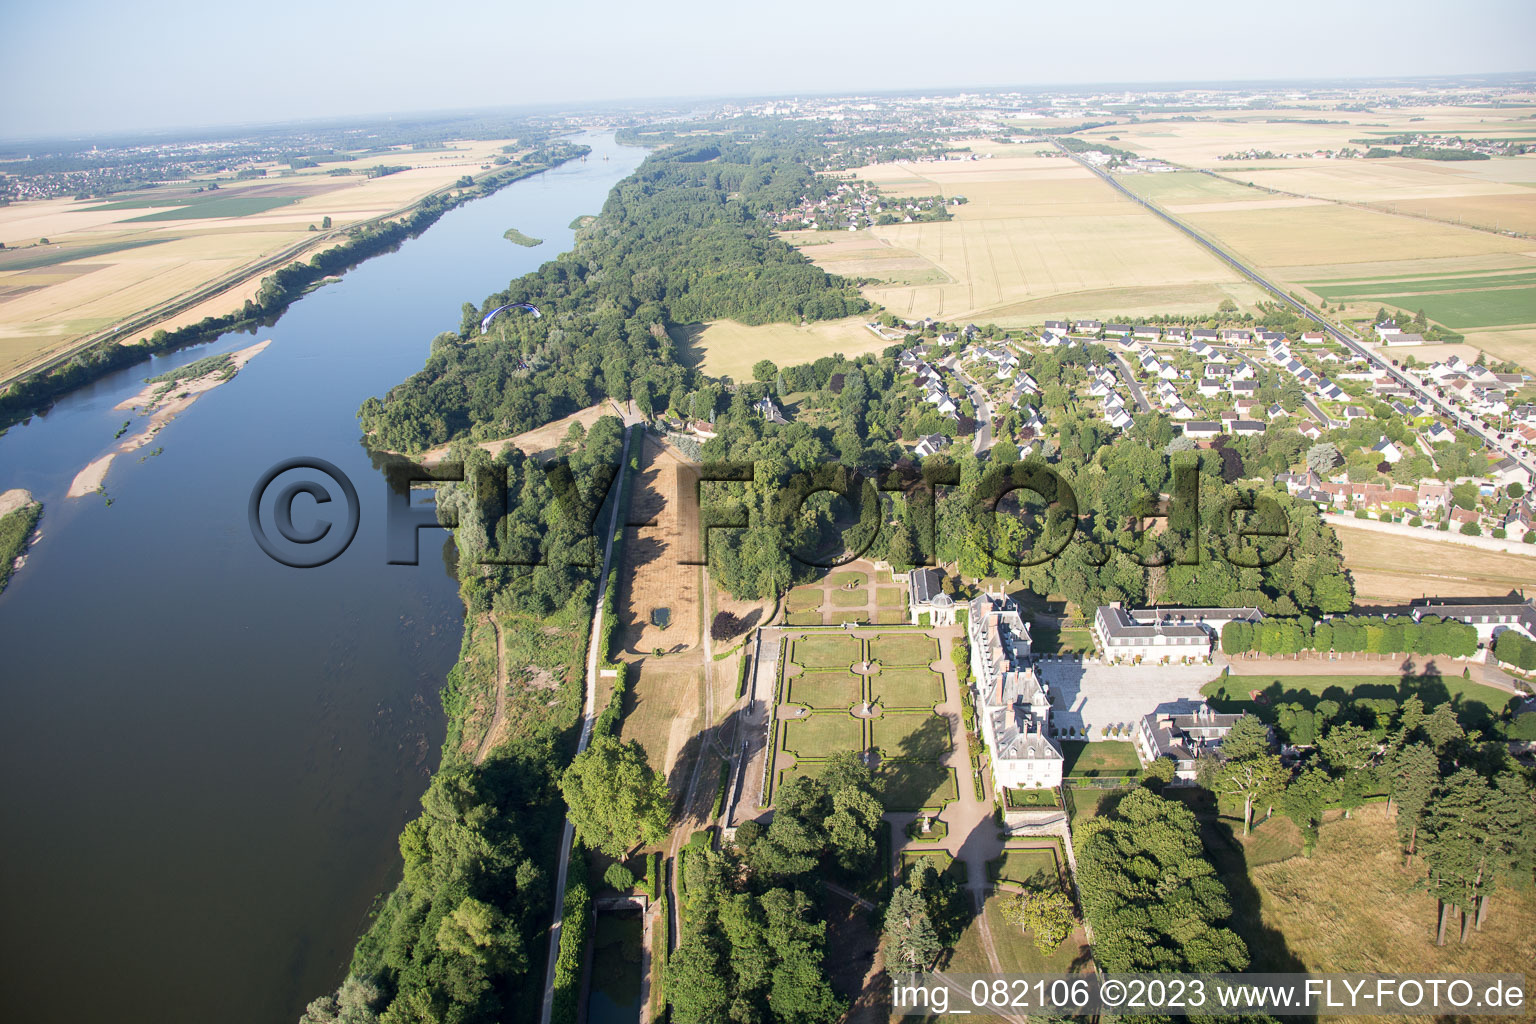 Menars im Bundesland Loir-et-Cher, Frankreich aus der Luft betrachtet